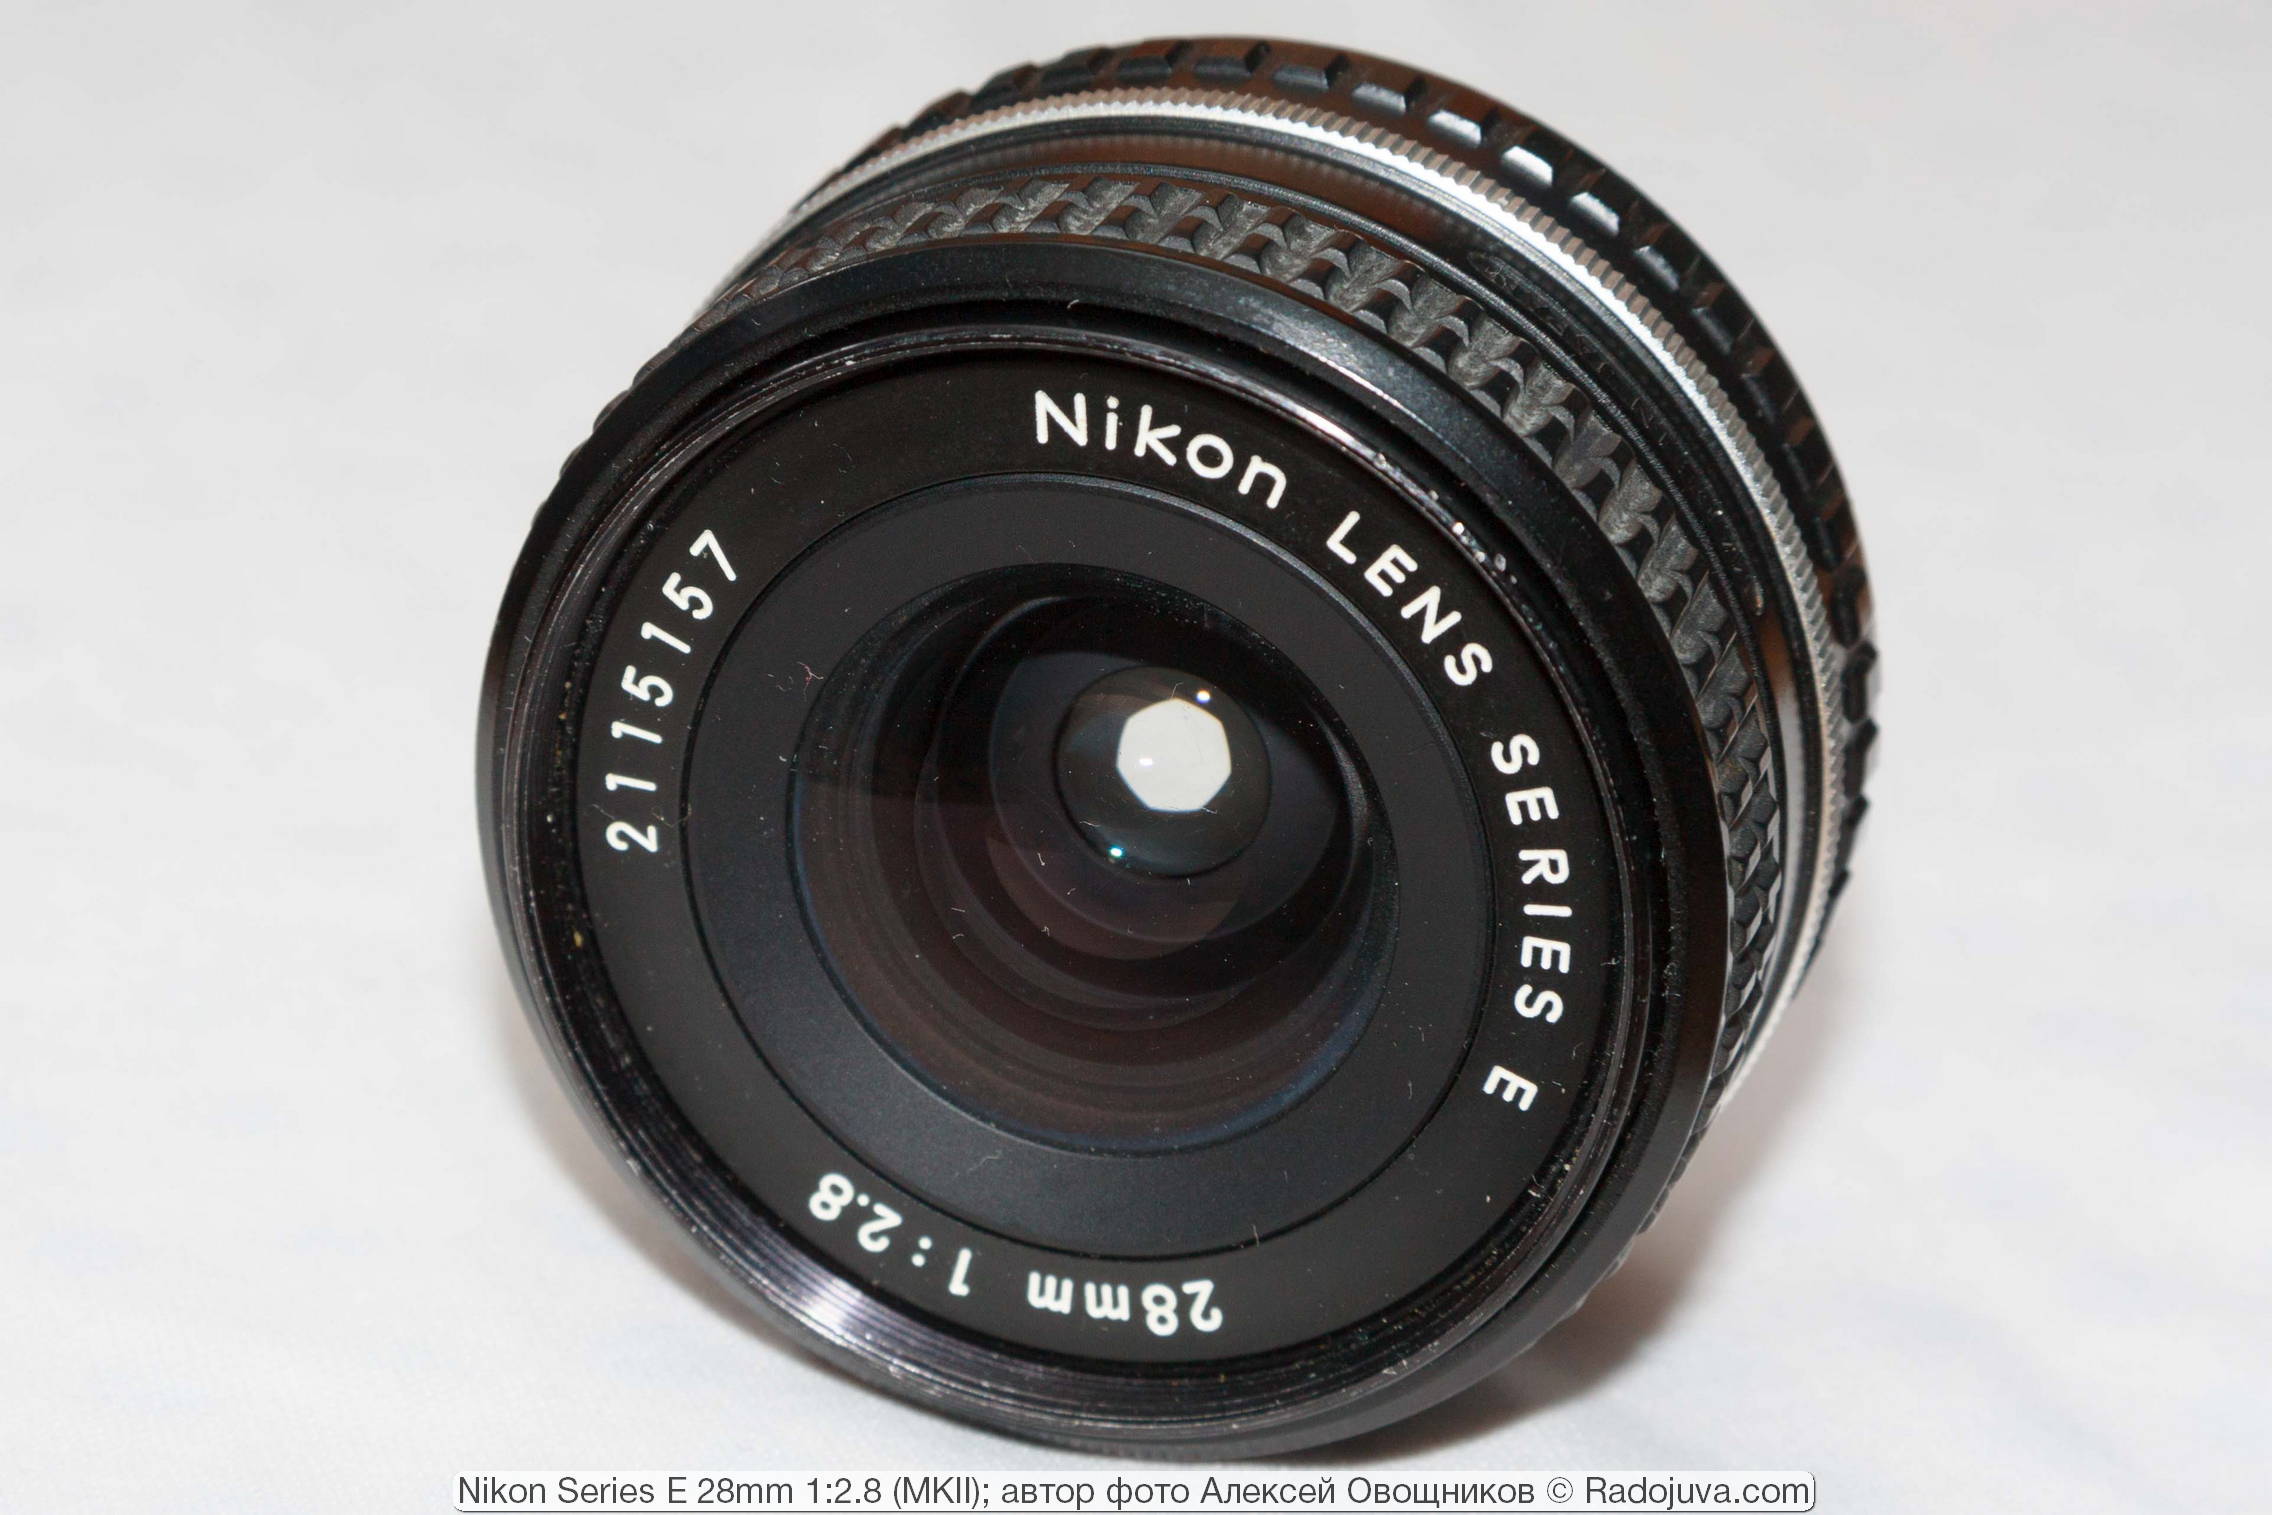 Nikon Series E 28mm 1: 2.8 MKII